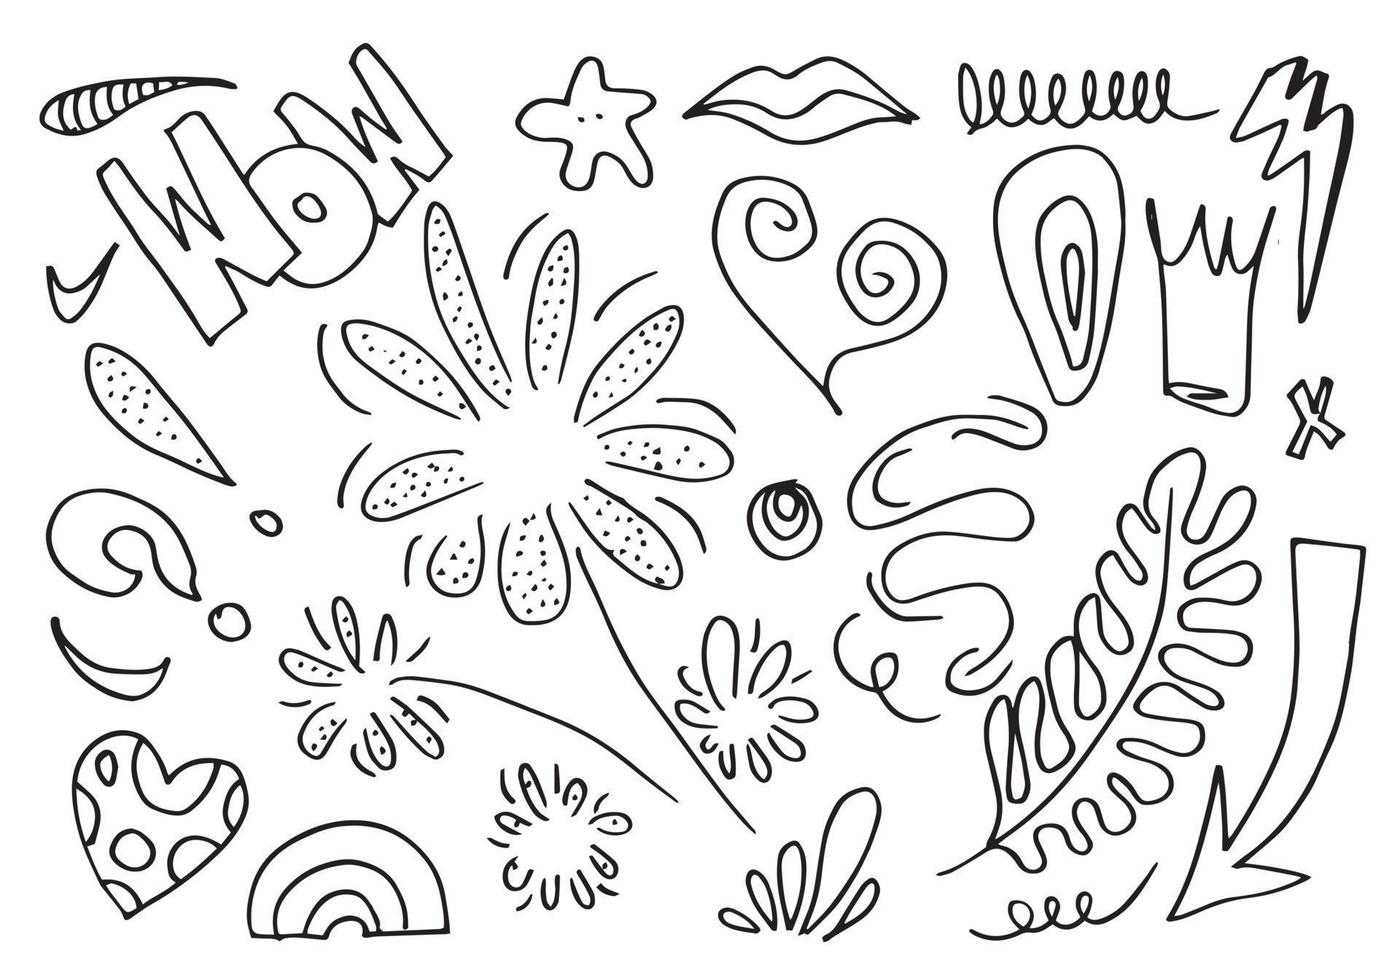 elementos de design doodle desenhados à mão, preto sobre fundo branco. elementos de design de esboço de doodle vetor